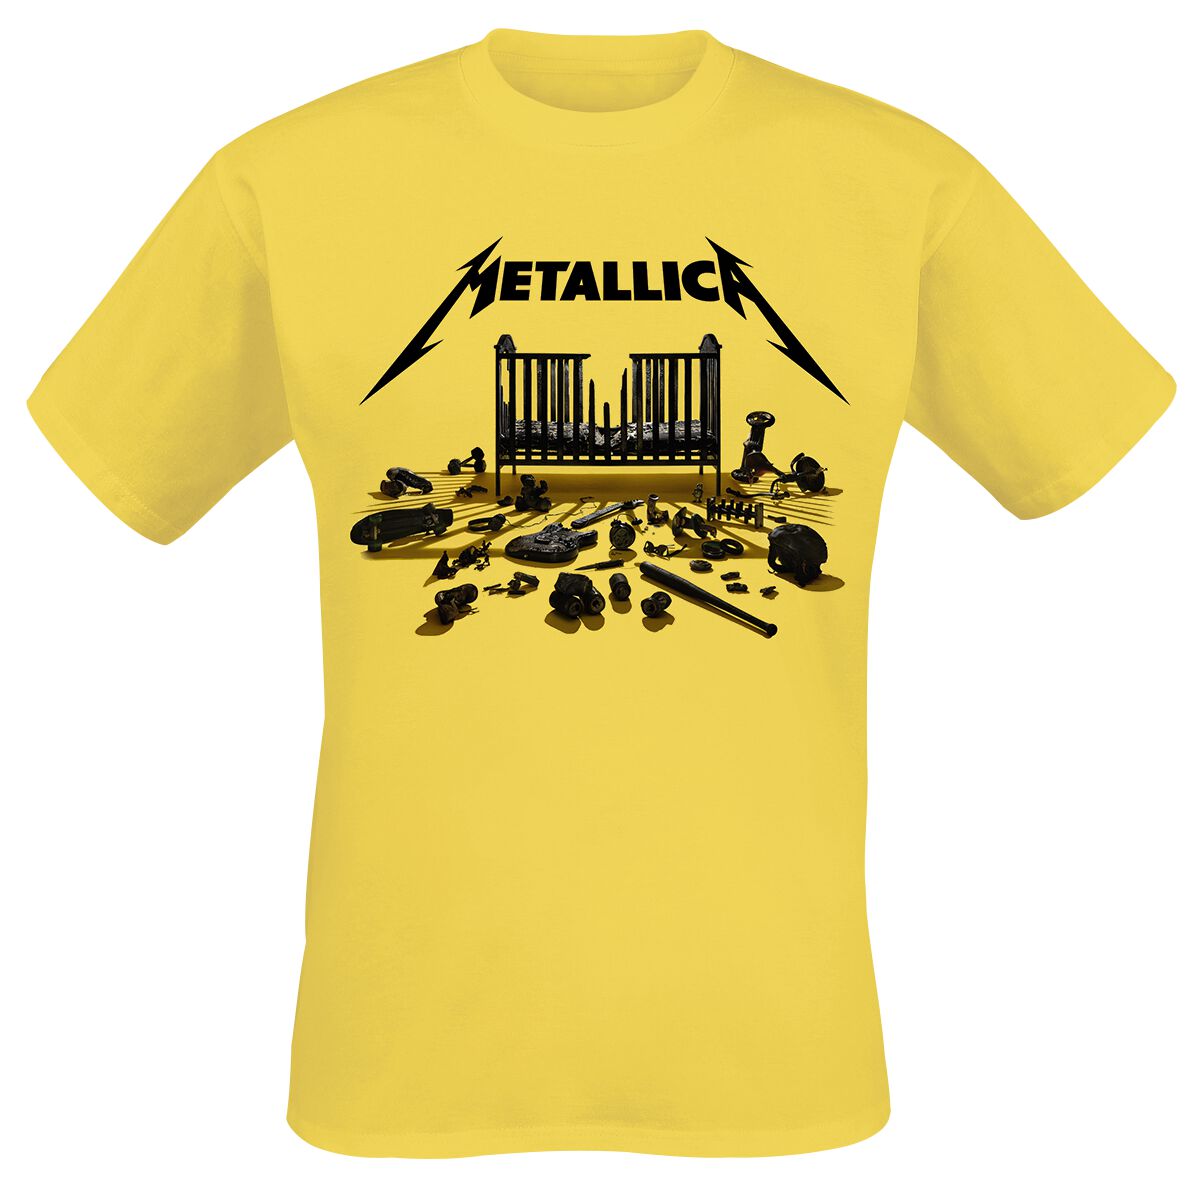 Metallica T-Shirt - Simplified Cover (M72) - S bis 3XL - für Männer - Größe L - gelb  - Lizenziertes Merchandise!